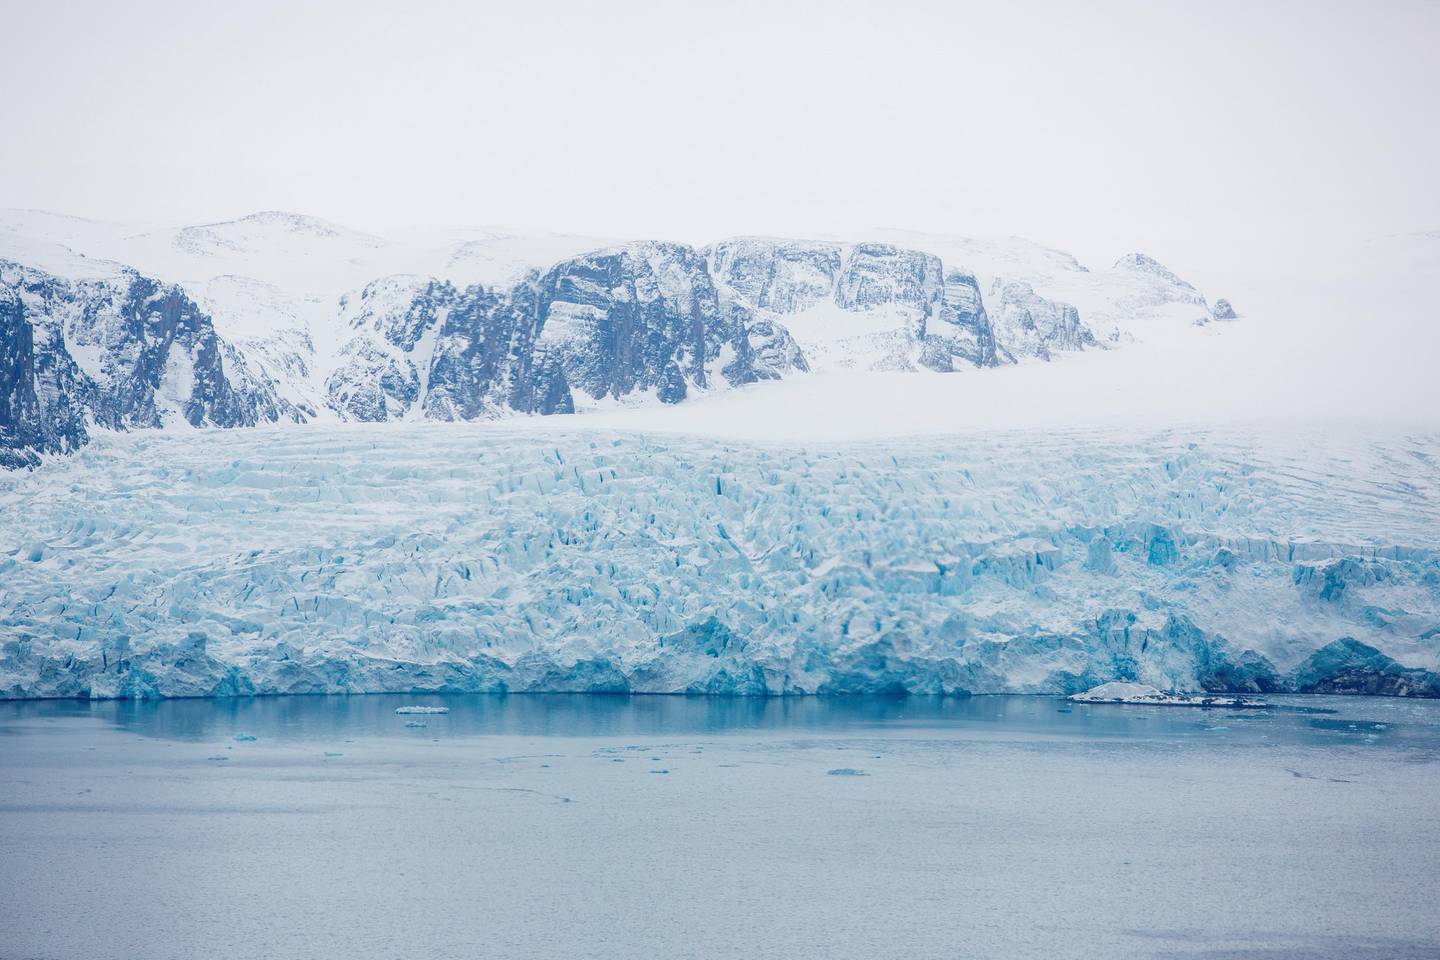 Nesten Nordpolen  20150421.
En isbre som sakte men sikkert velter ut i havet på Svalbard. Svalbard og Arktis er det område i verden hvor klimaendringene merkes mest og først.
Foto: Tore Meek / NTB scanpix